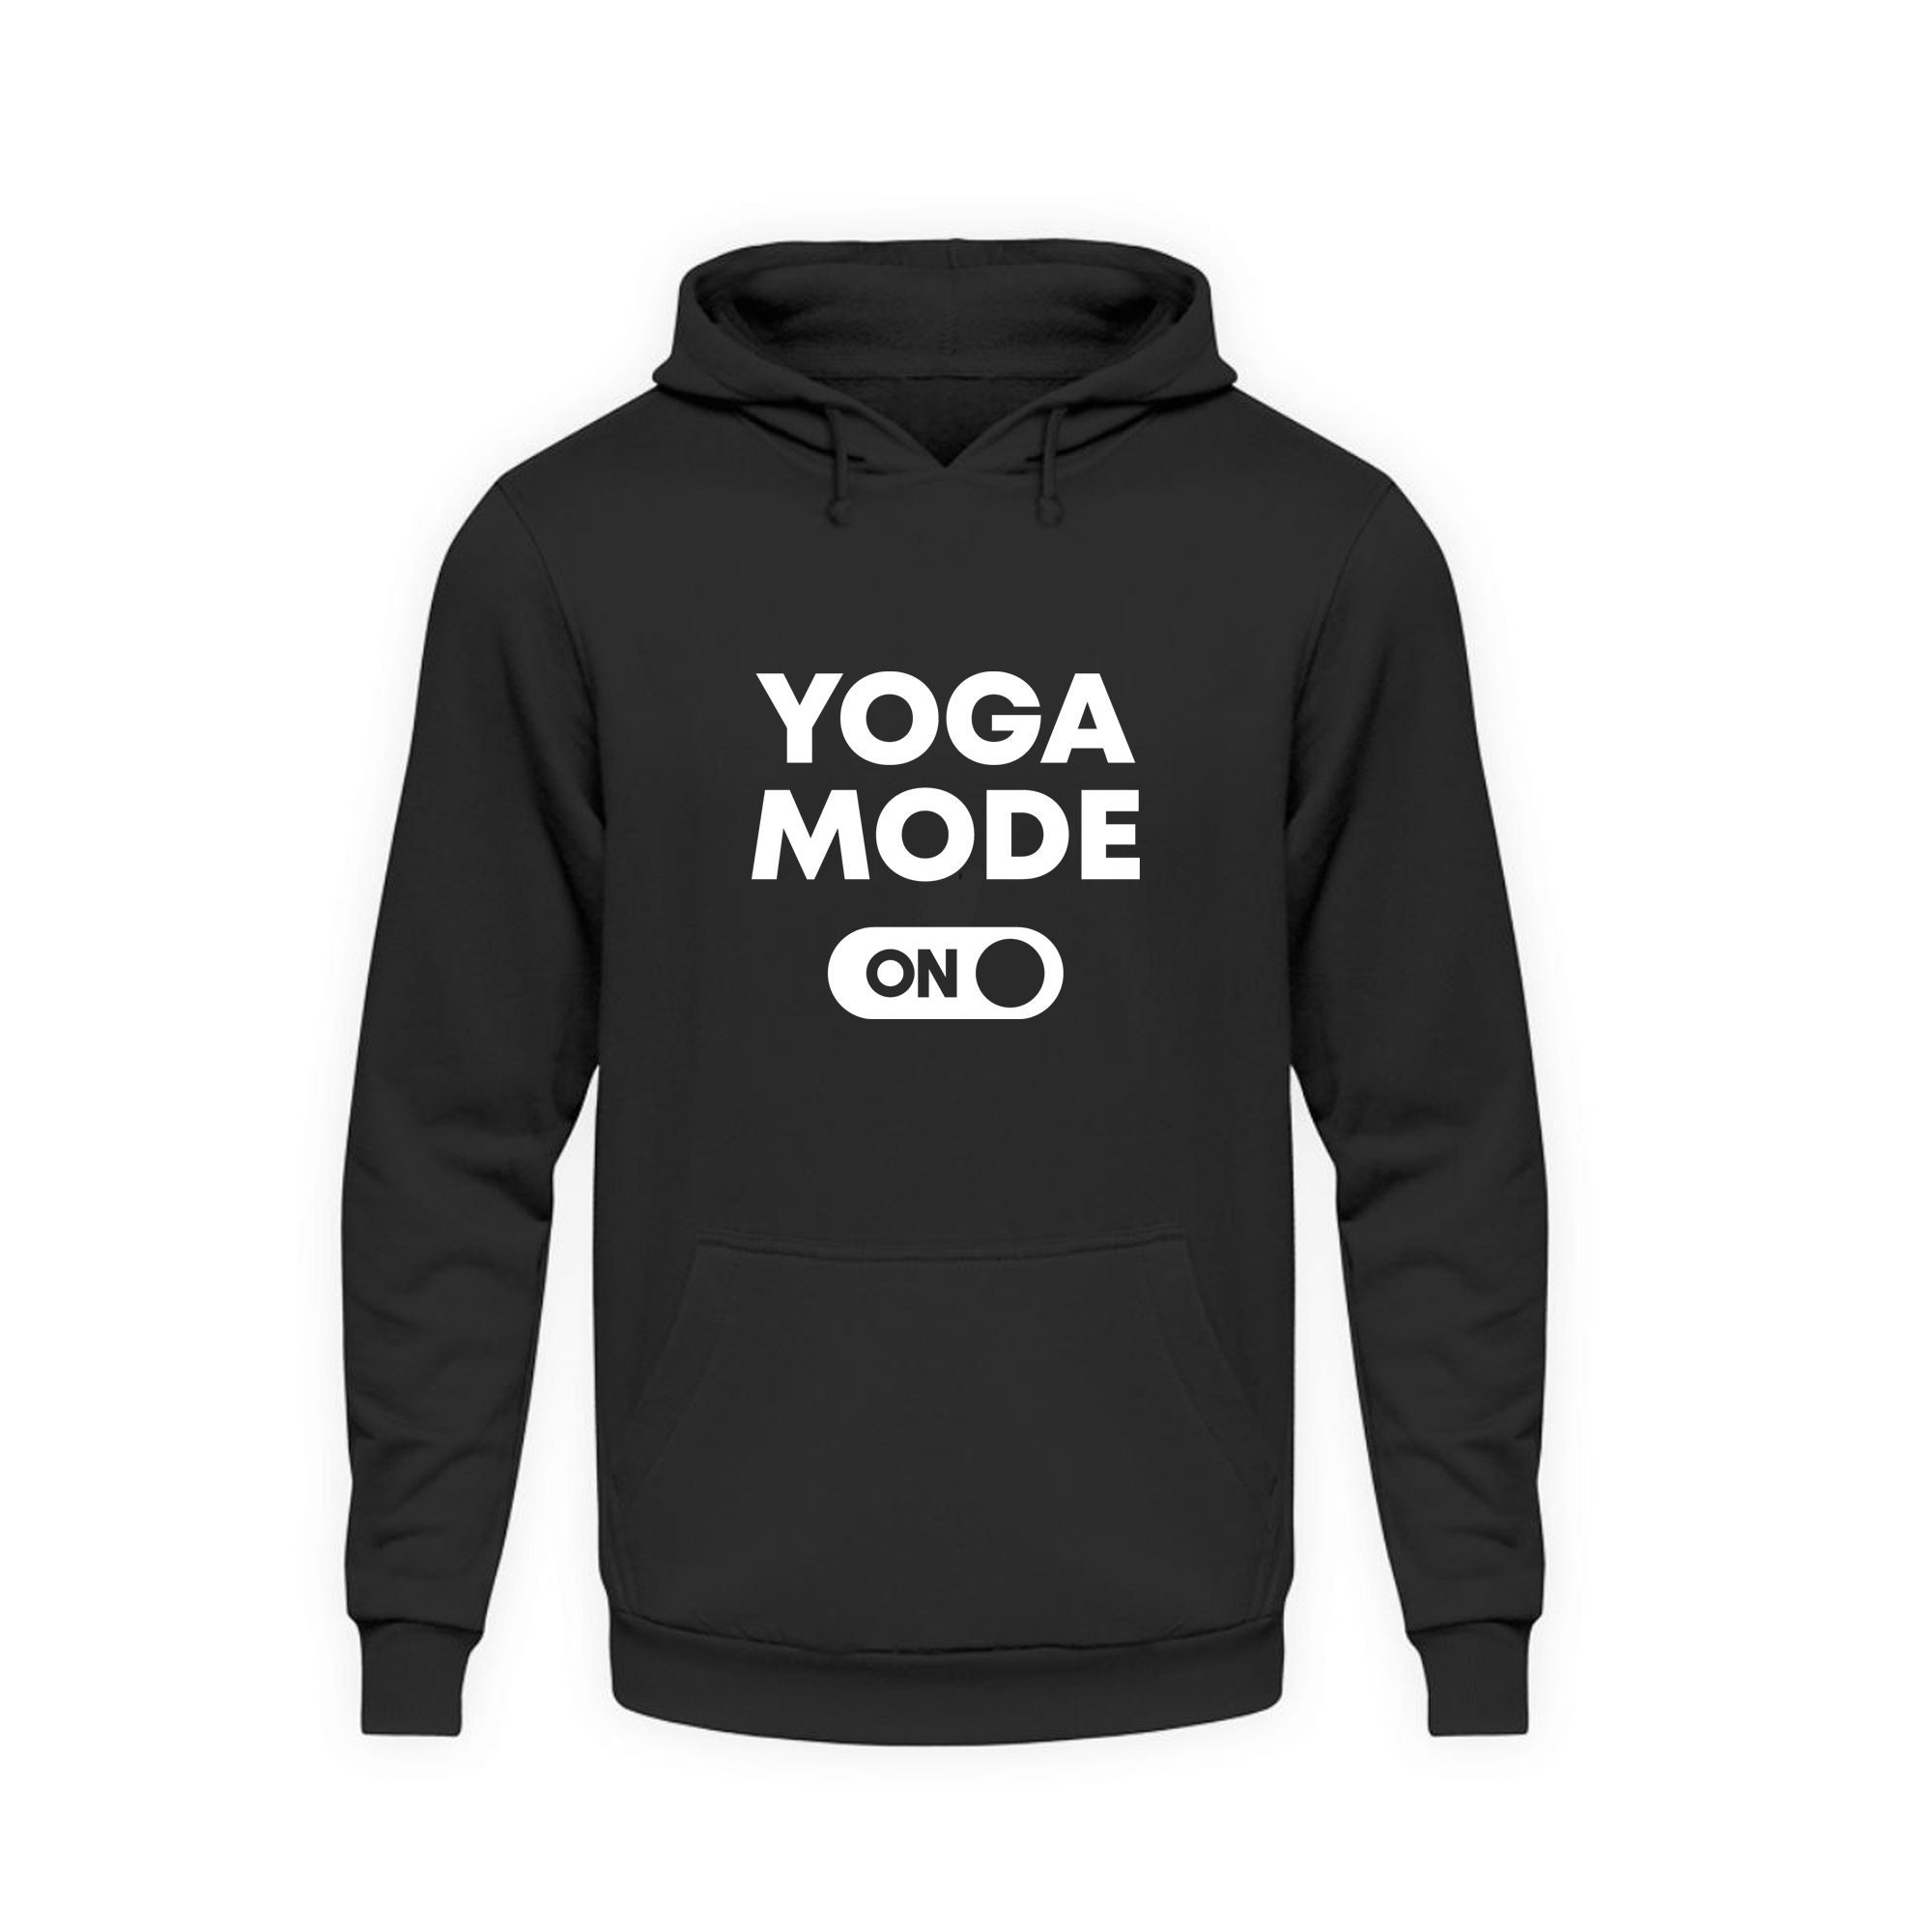 Namaste hoodie